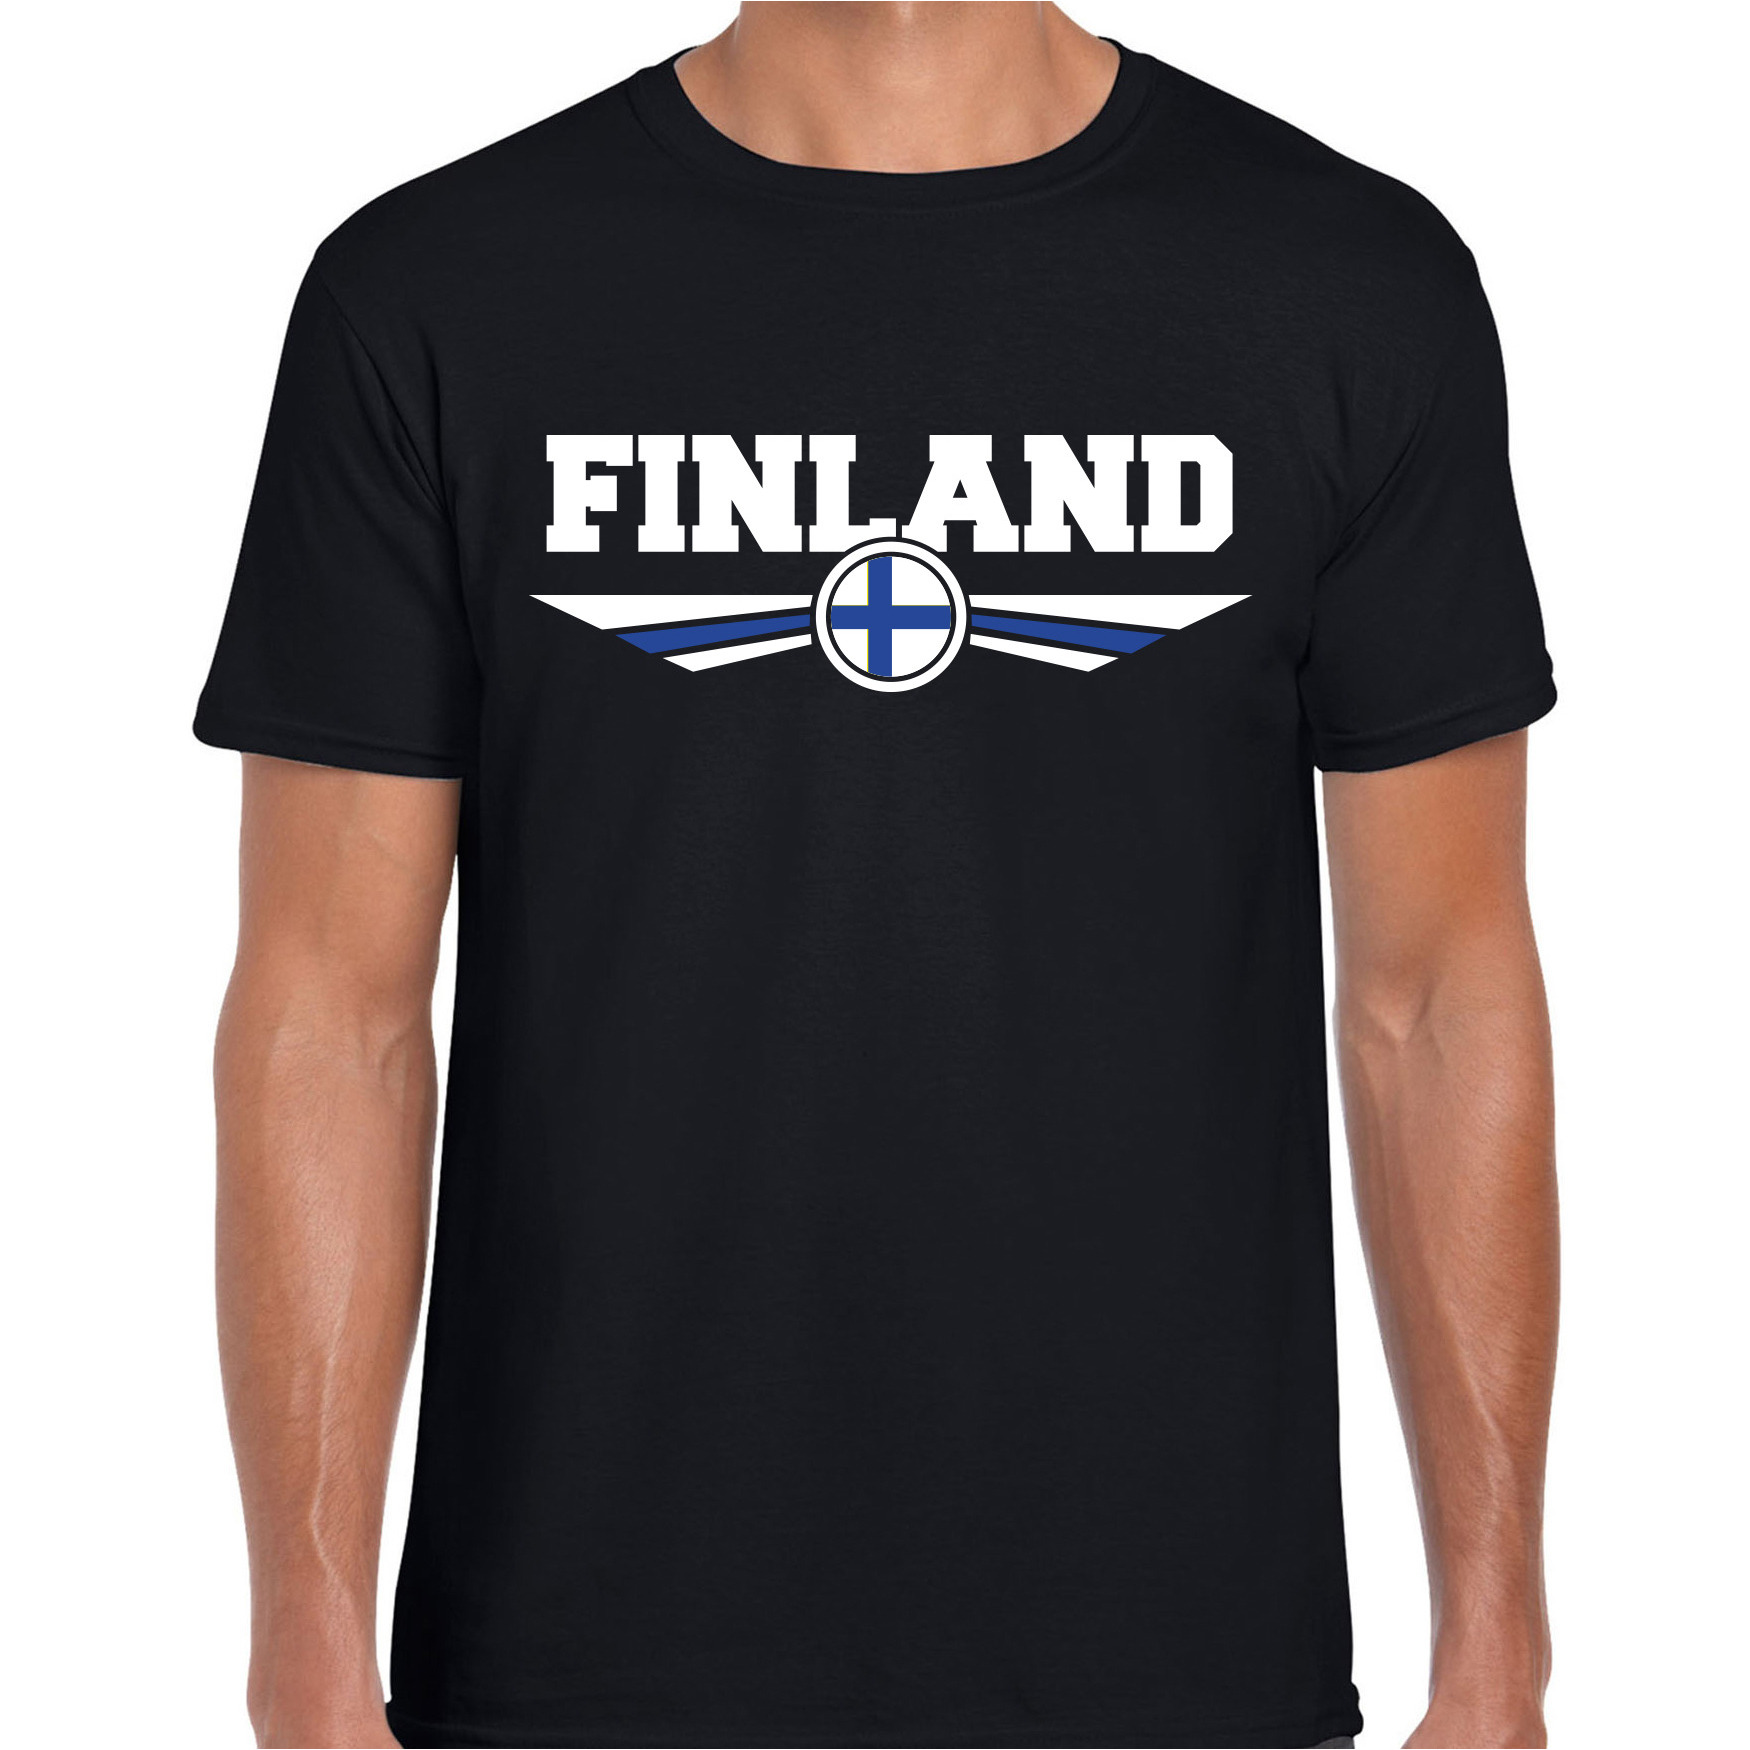 Finland landen t-shirt zwart heren